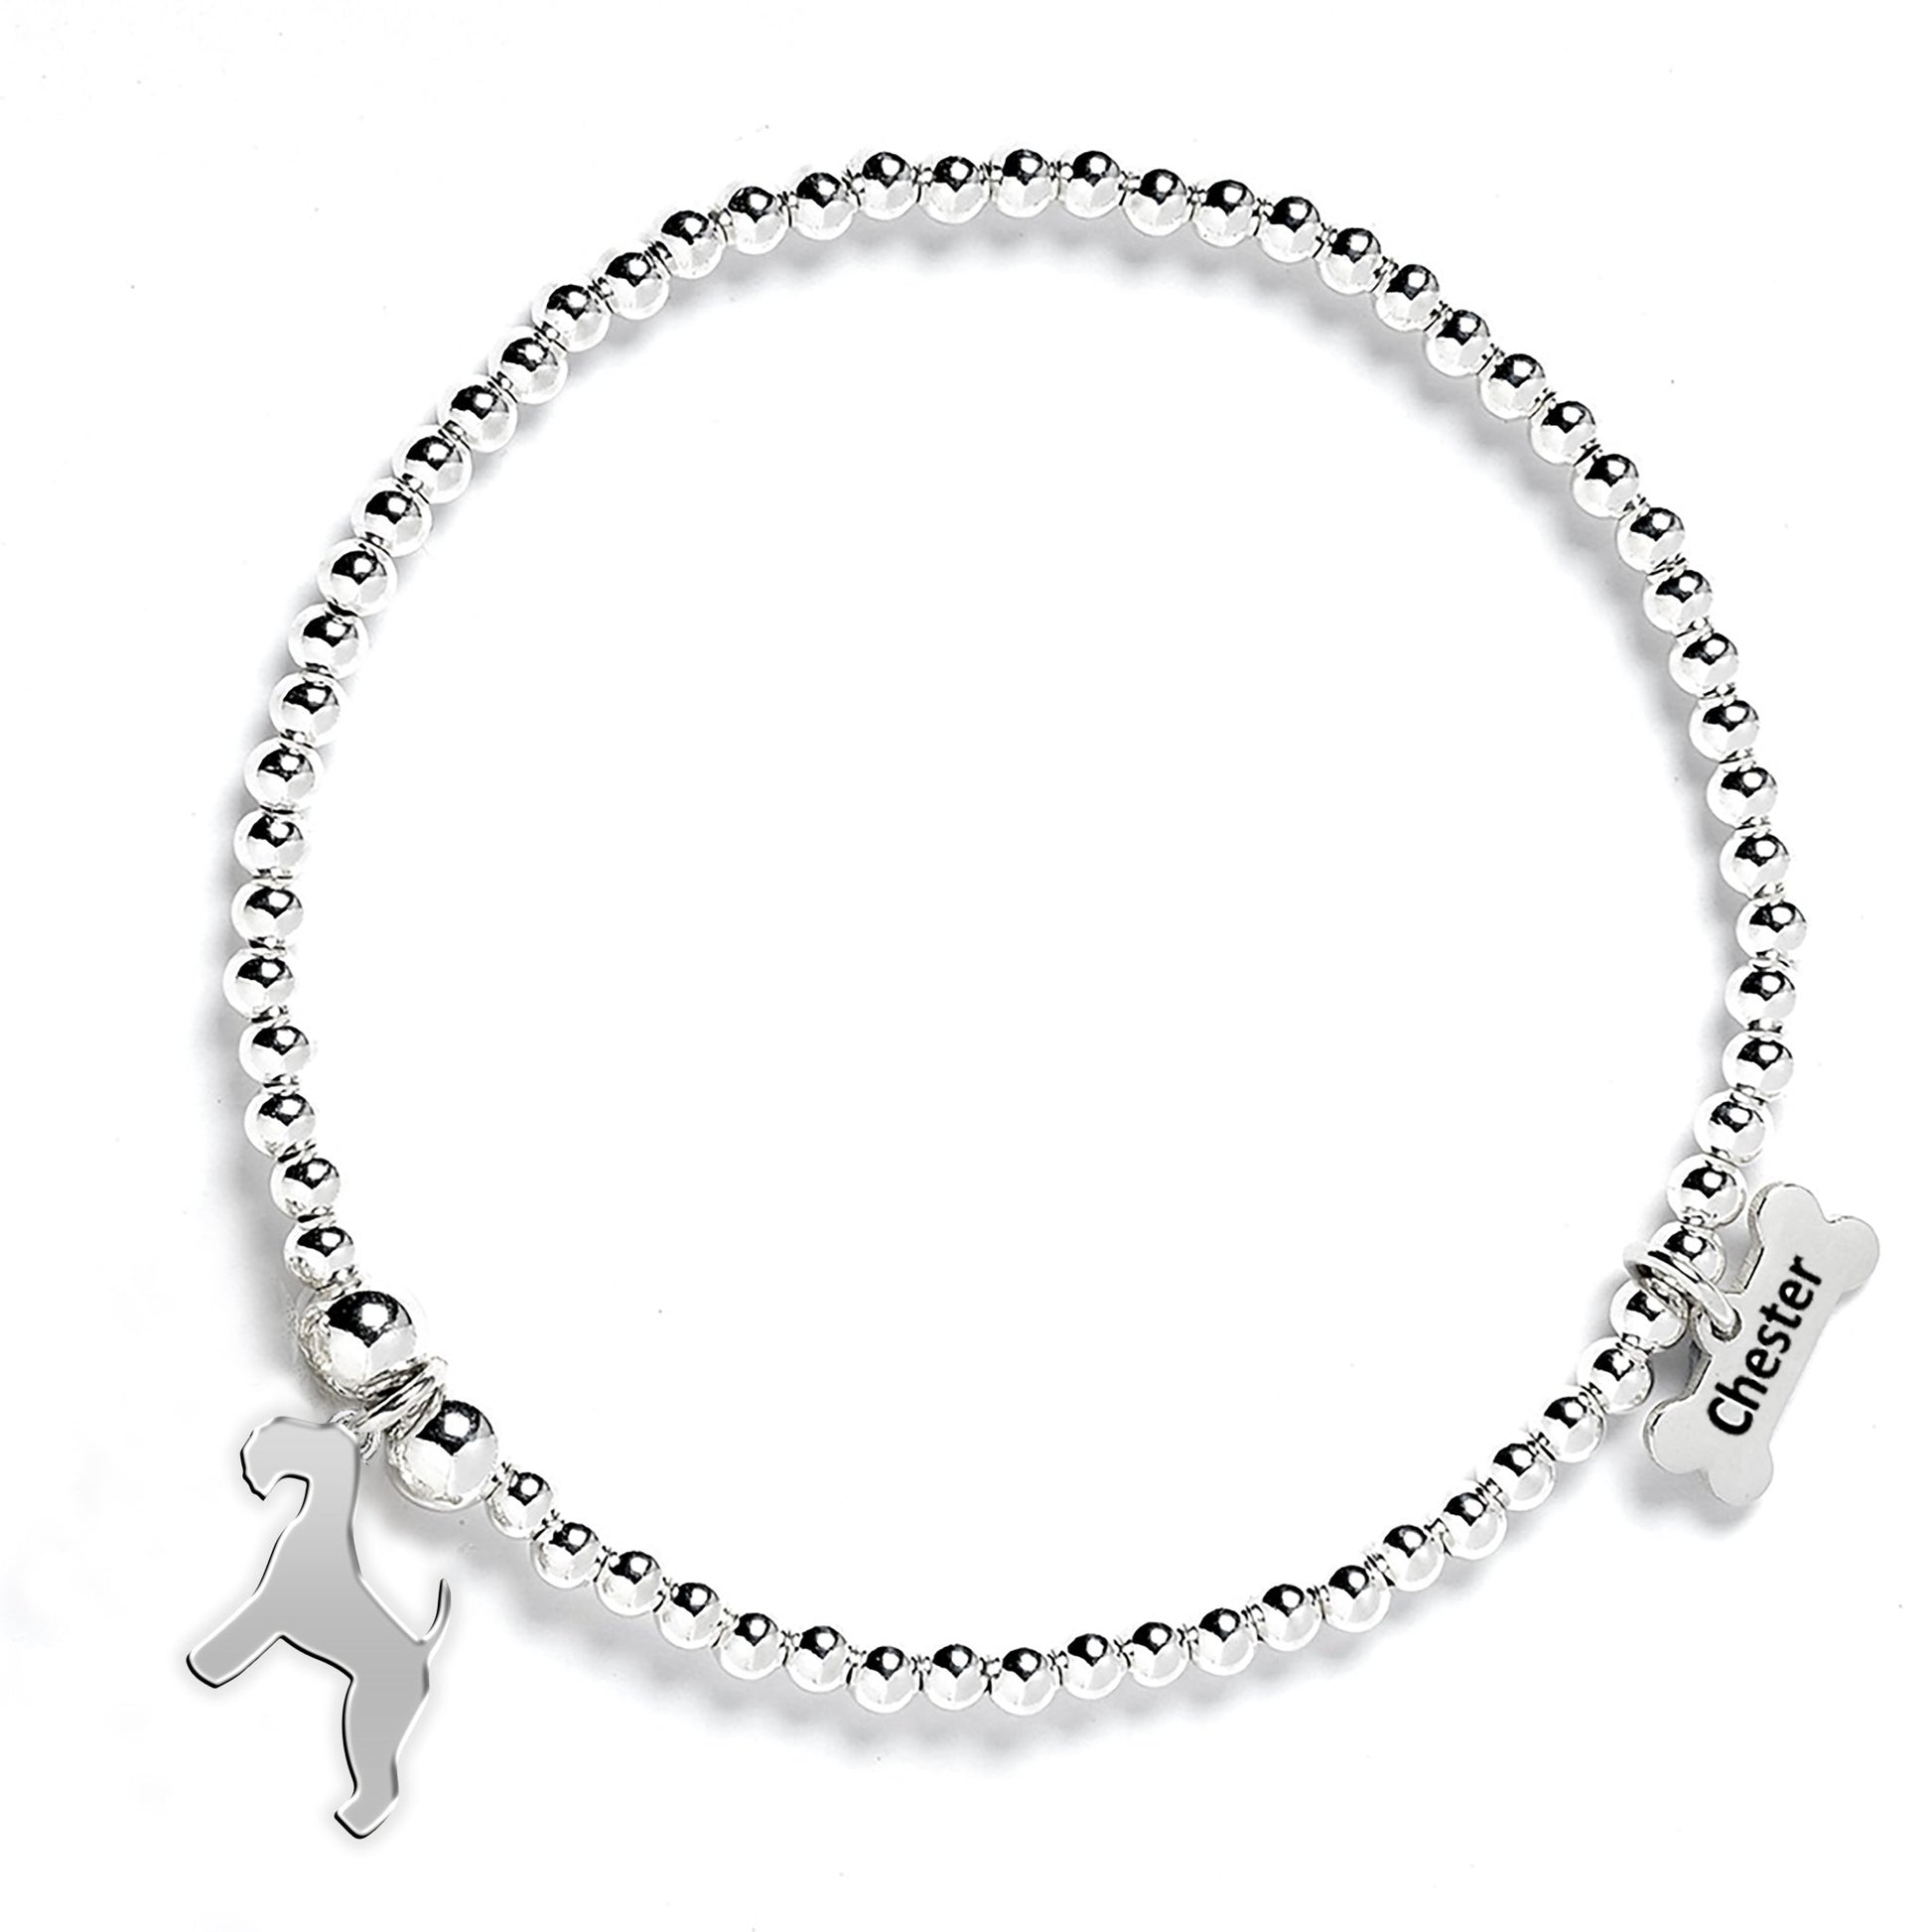 Lakeland Terrier Silhouette Silver Ball Bead Bracelet - Personalised - MYLEE London